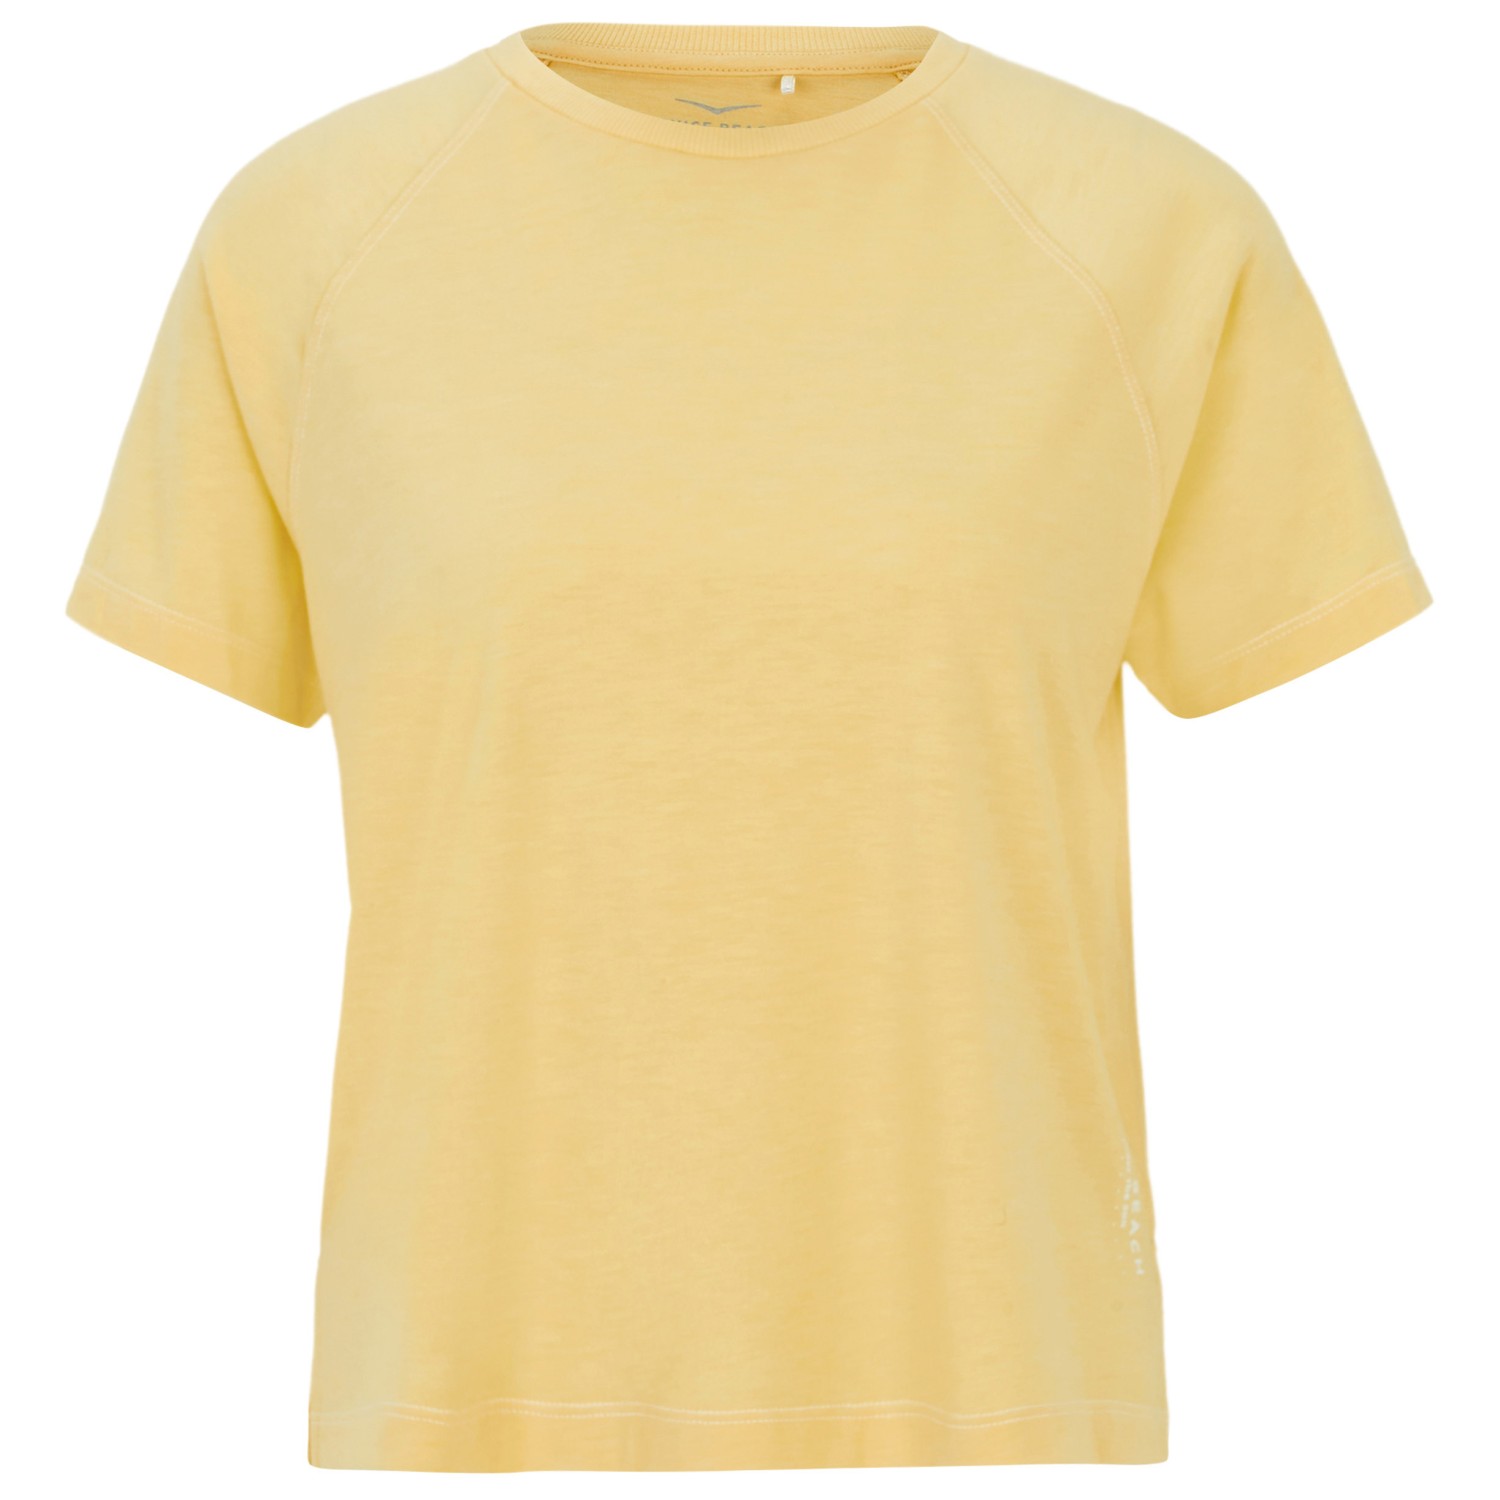 Функциональная рубашка Venice Beach Women's Mya T Shirt, цвет Sunshine mya bay пзолоченный браслет цепь blue eye venice с подвеской из стекла